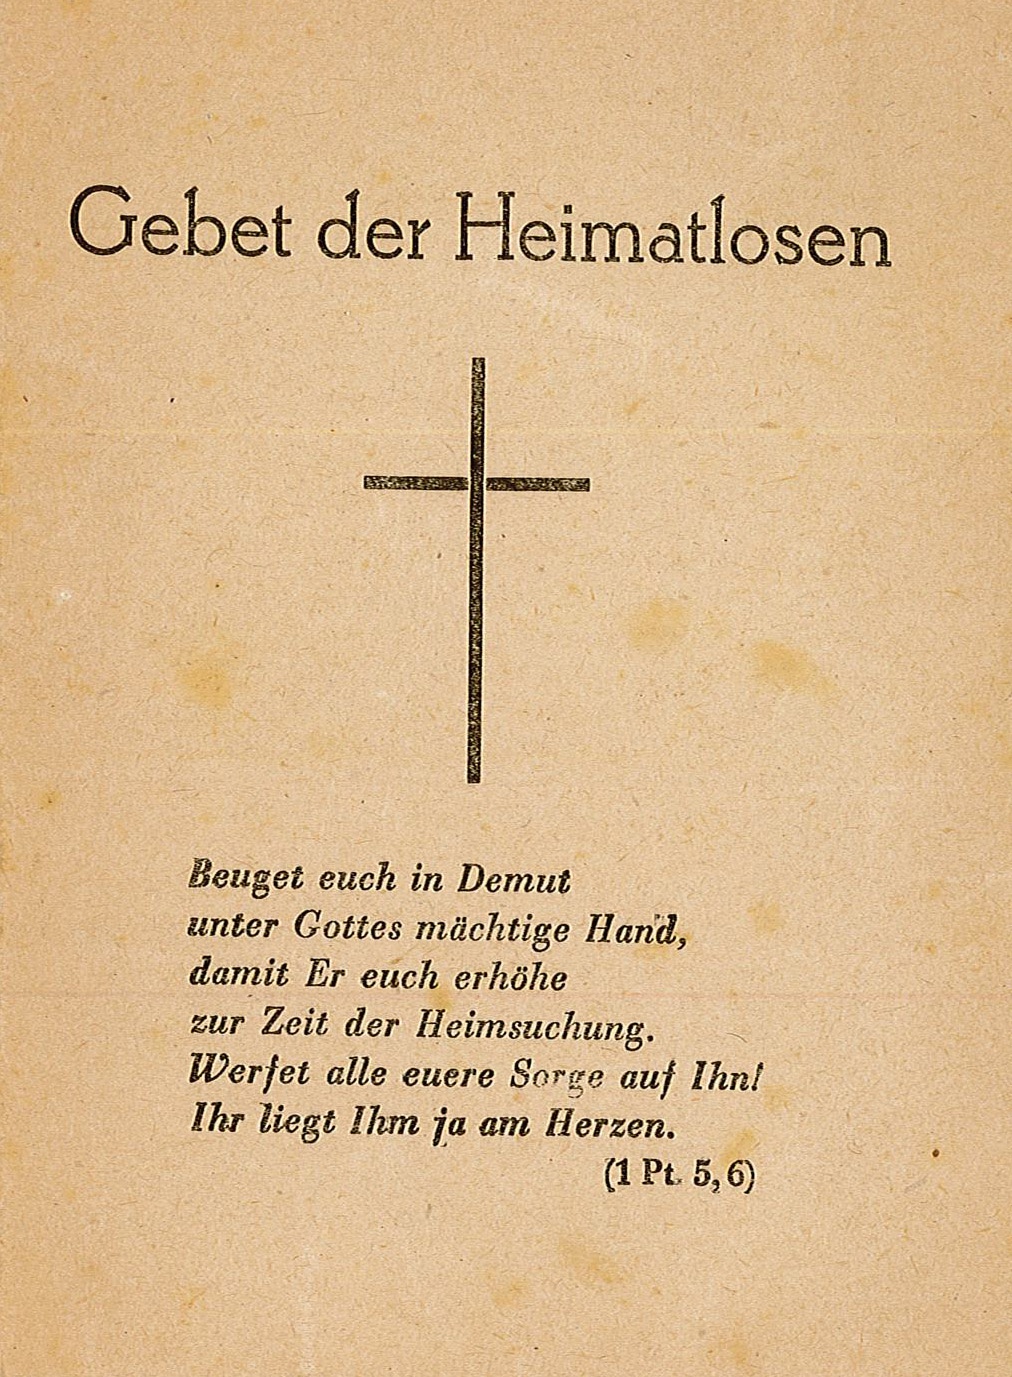 Gebetszettel - Gebet der Heimatlosen (Museum Wolmirstedt RR-F)